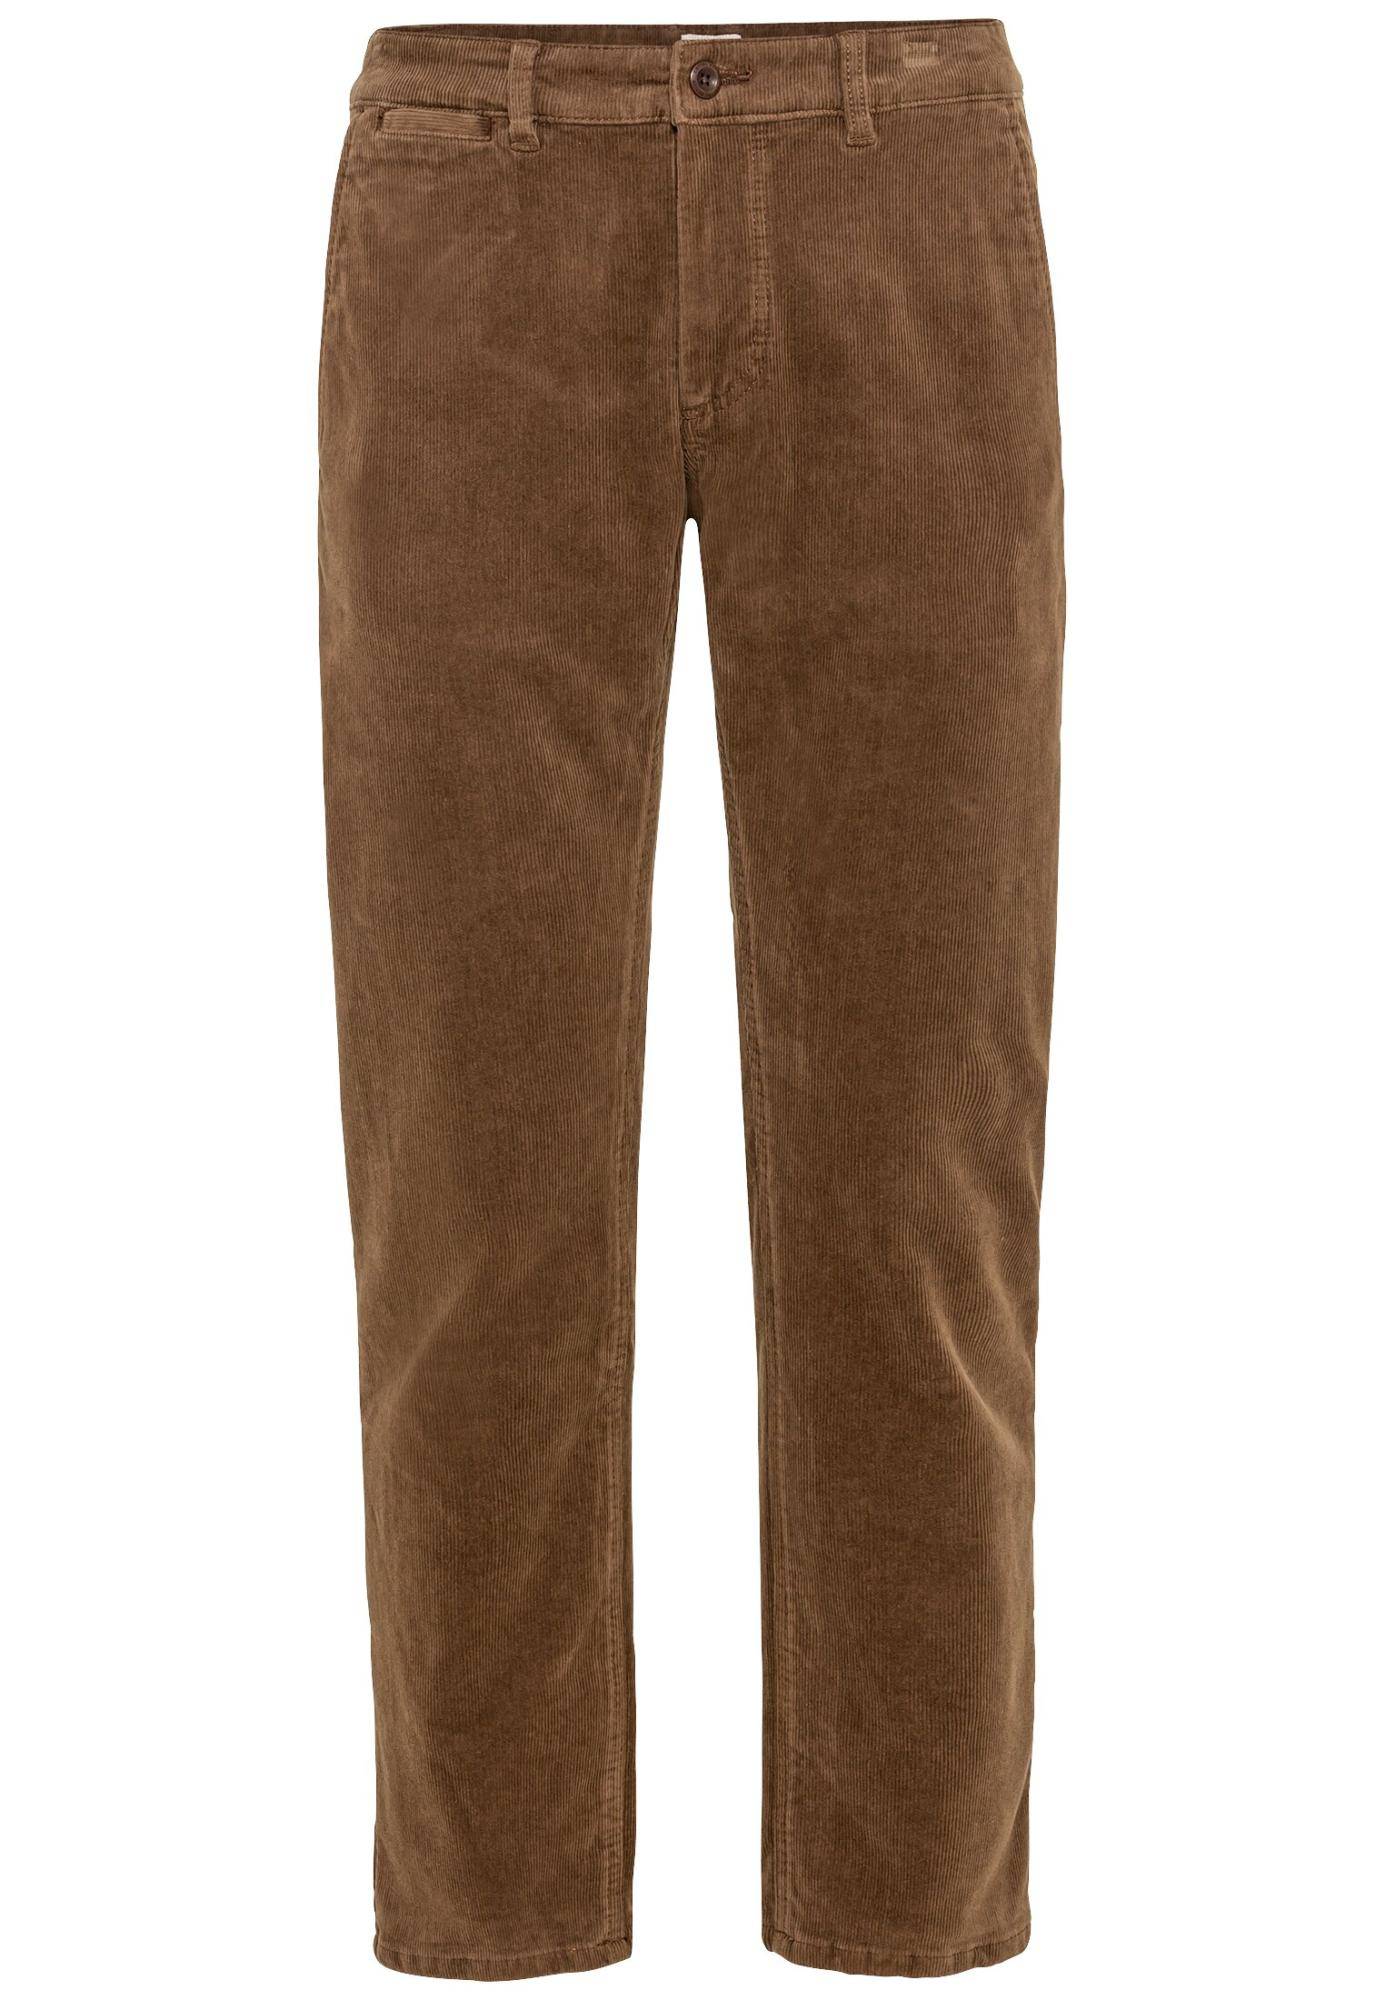 Мужские брюки Camel Active, коричневые